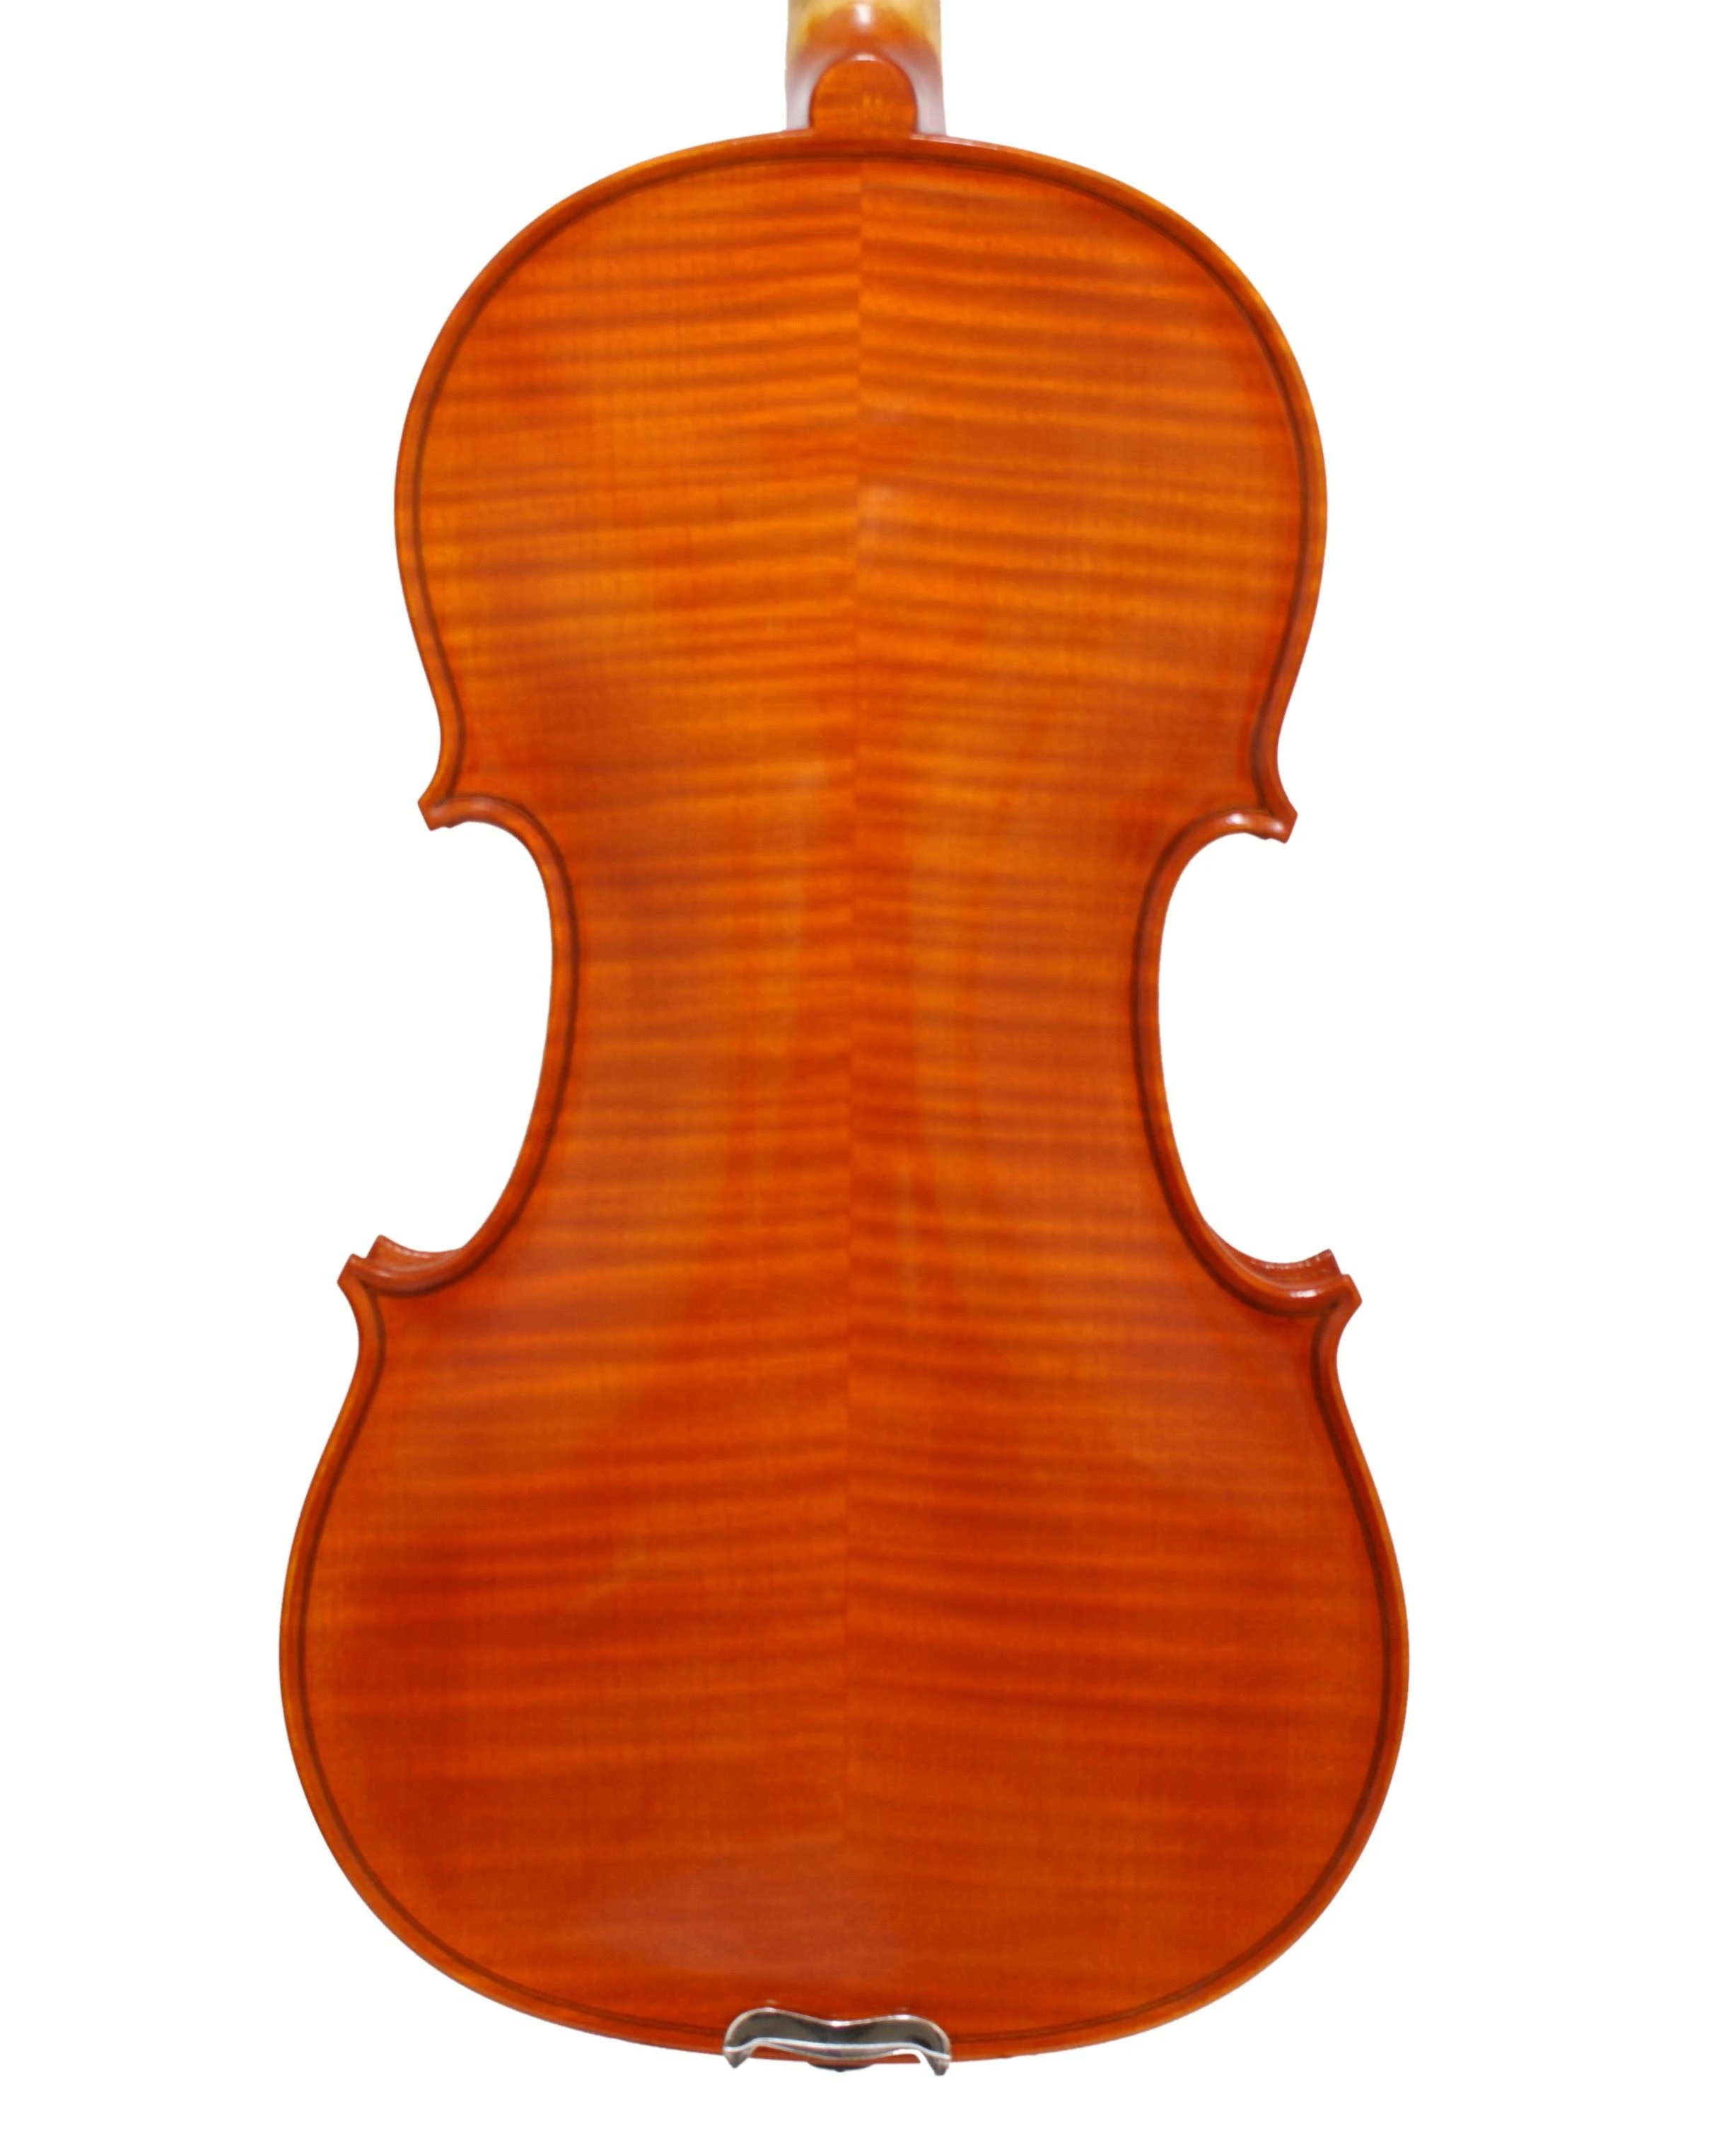 安默麗小提琴‧Model of Antonio Stradivari 1716 violin[Messiah]